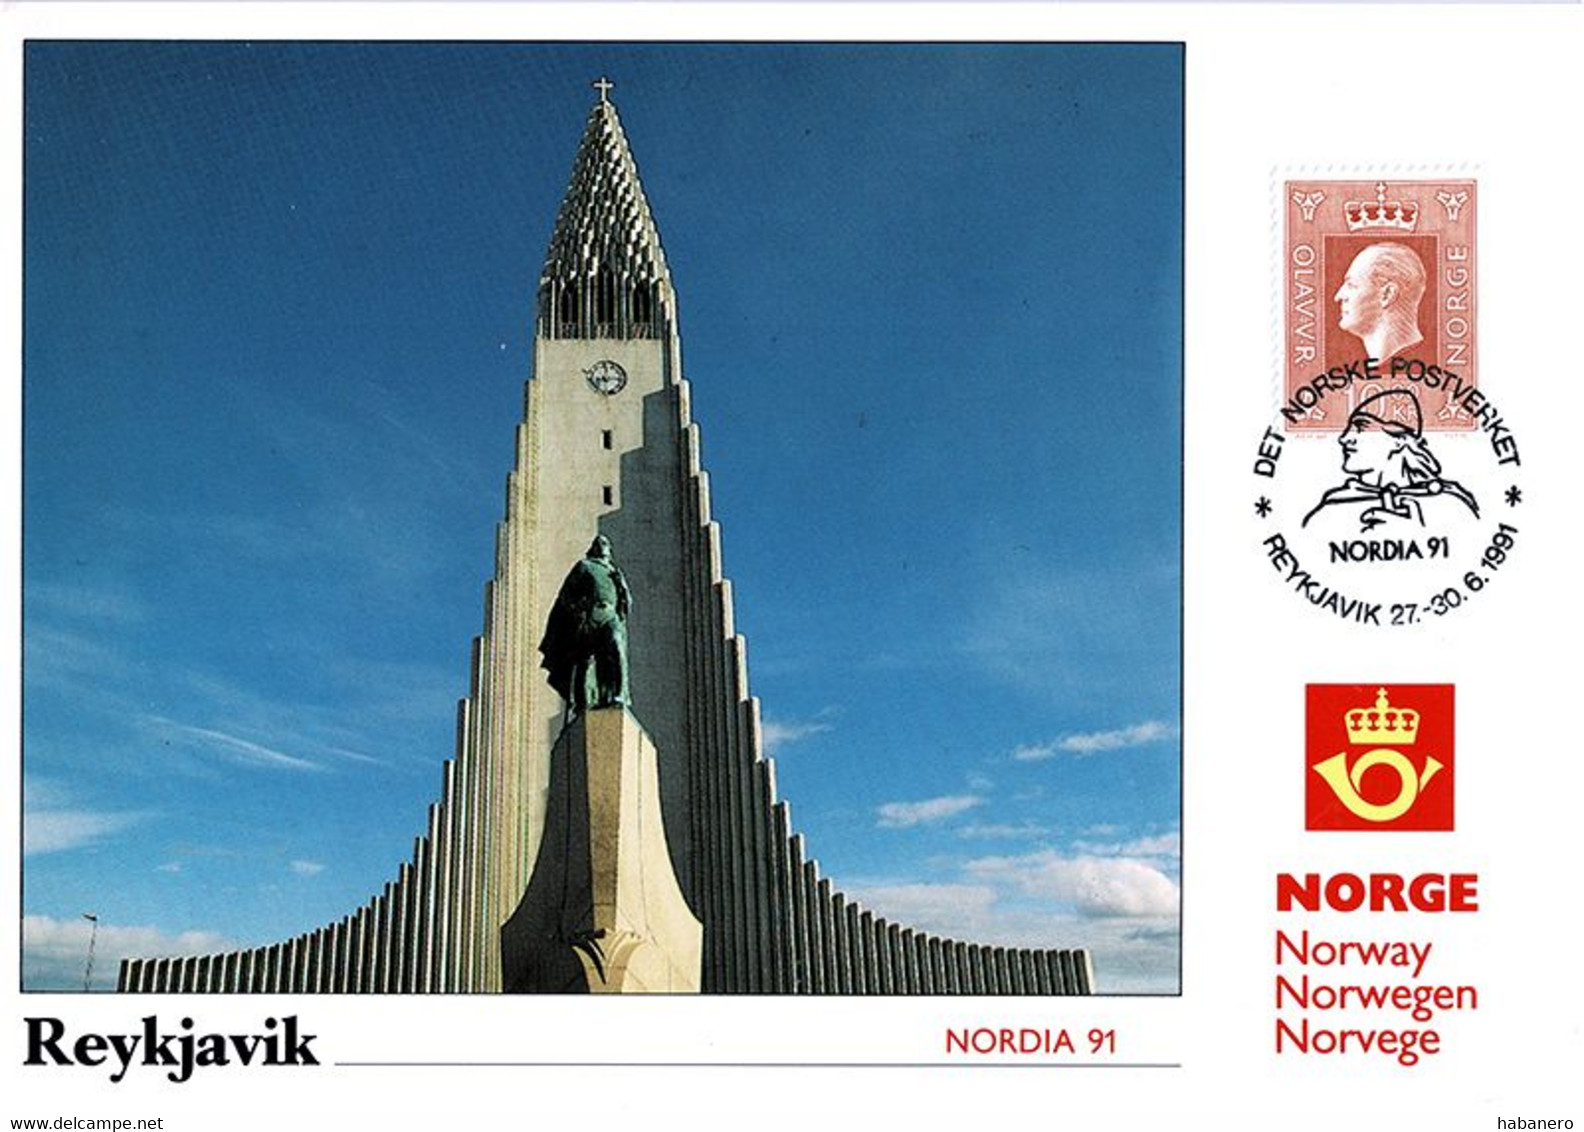 NORWAY 1991 PU82 NORDIA '91 REYKJAVIK EXHIBITION CARD - Cartoline Maximum